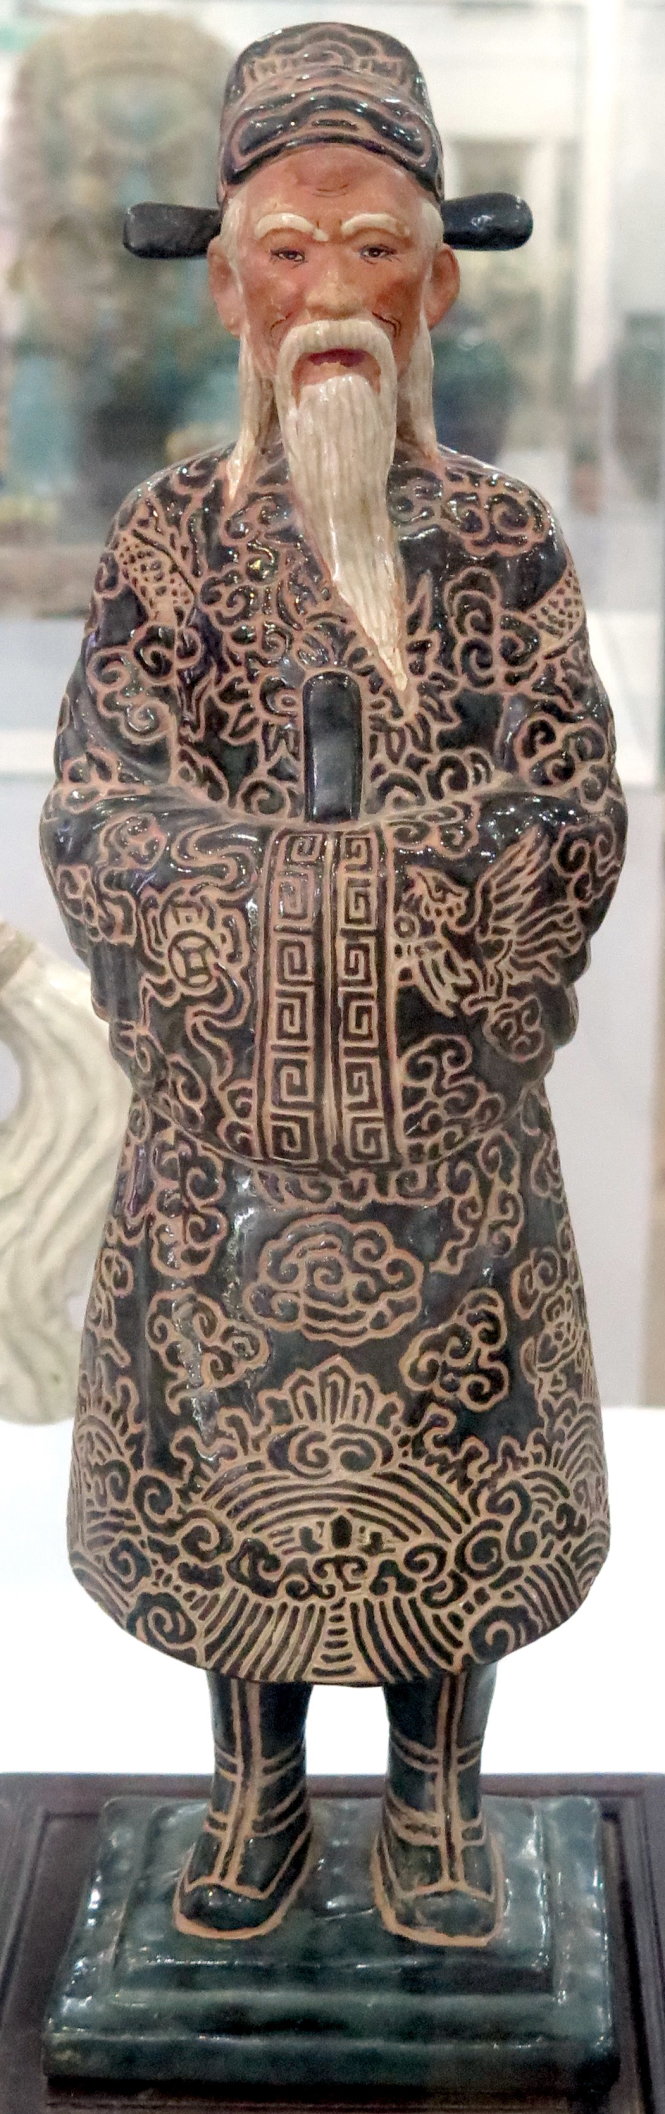 Tượng Nguyễn Trãi bằng gốm Biên Hòa, của nhà sưu tập Đức Huy - Ảnh: L.Điền